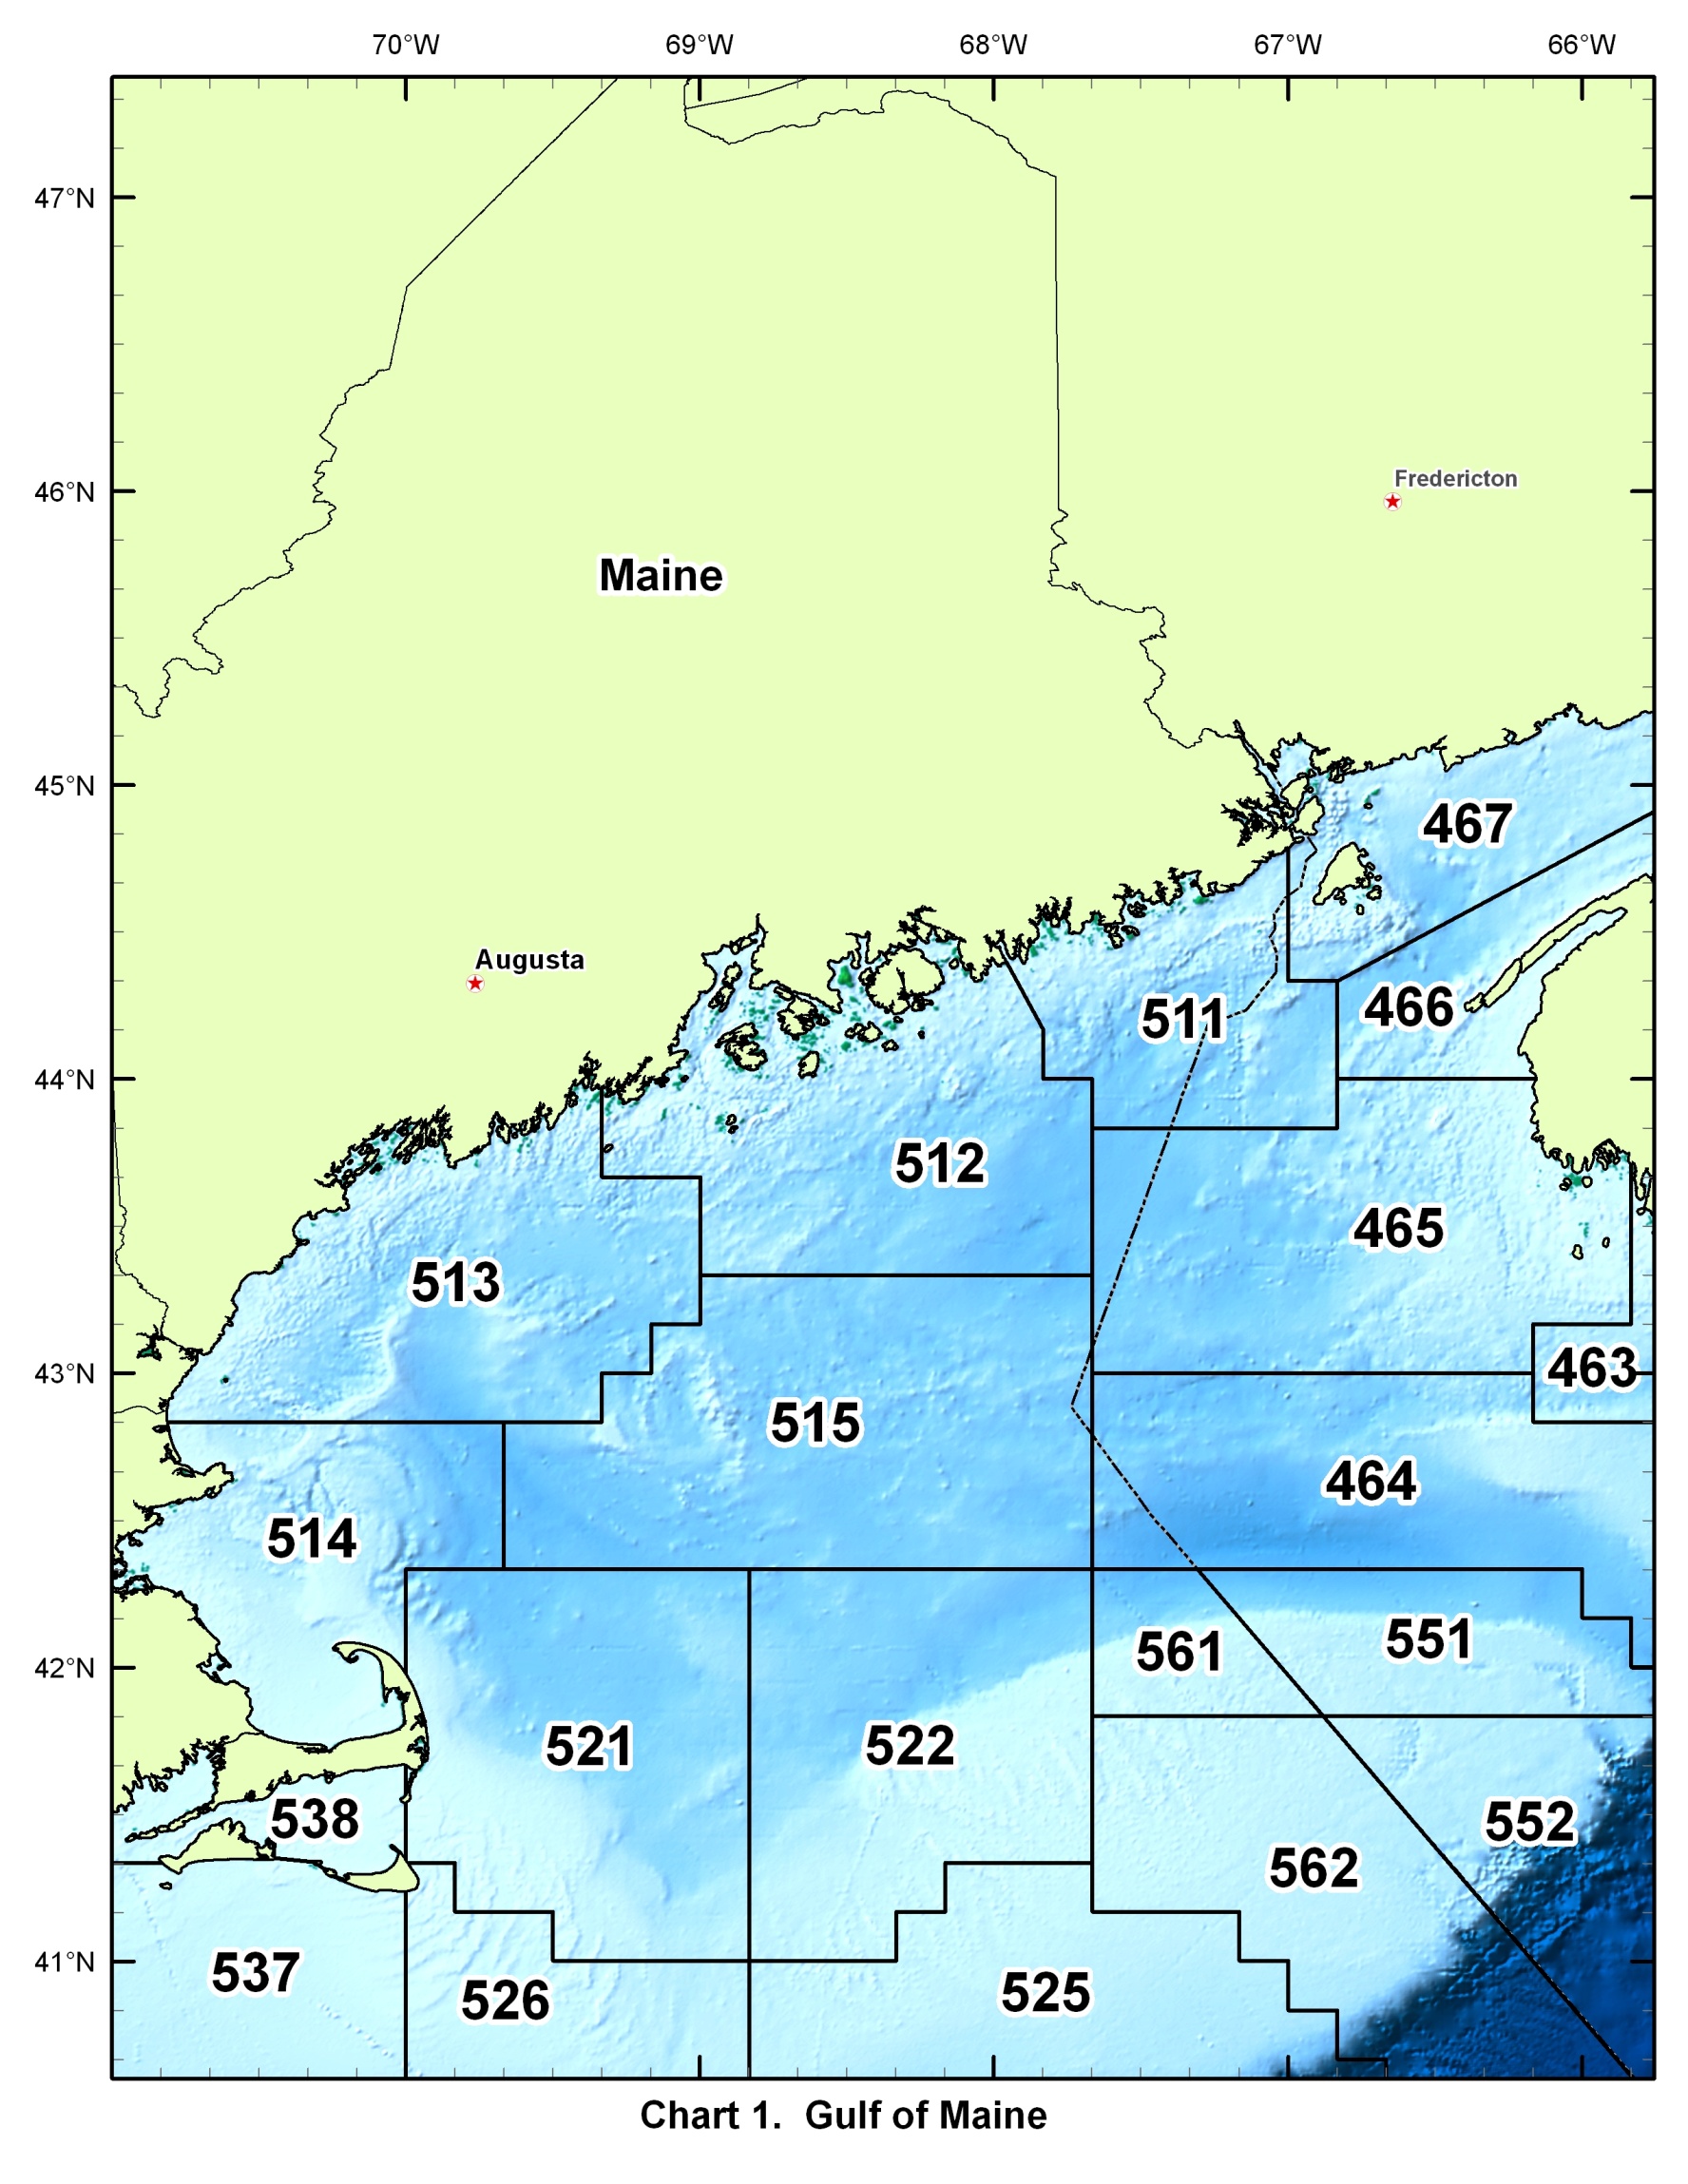 Chart 1 - Gulf of Maine